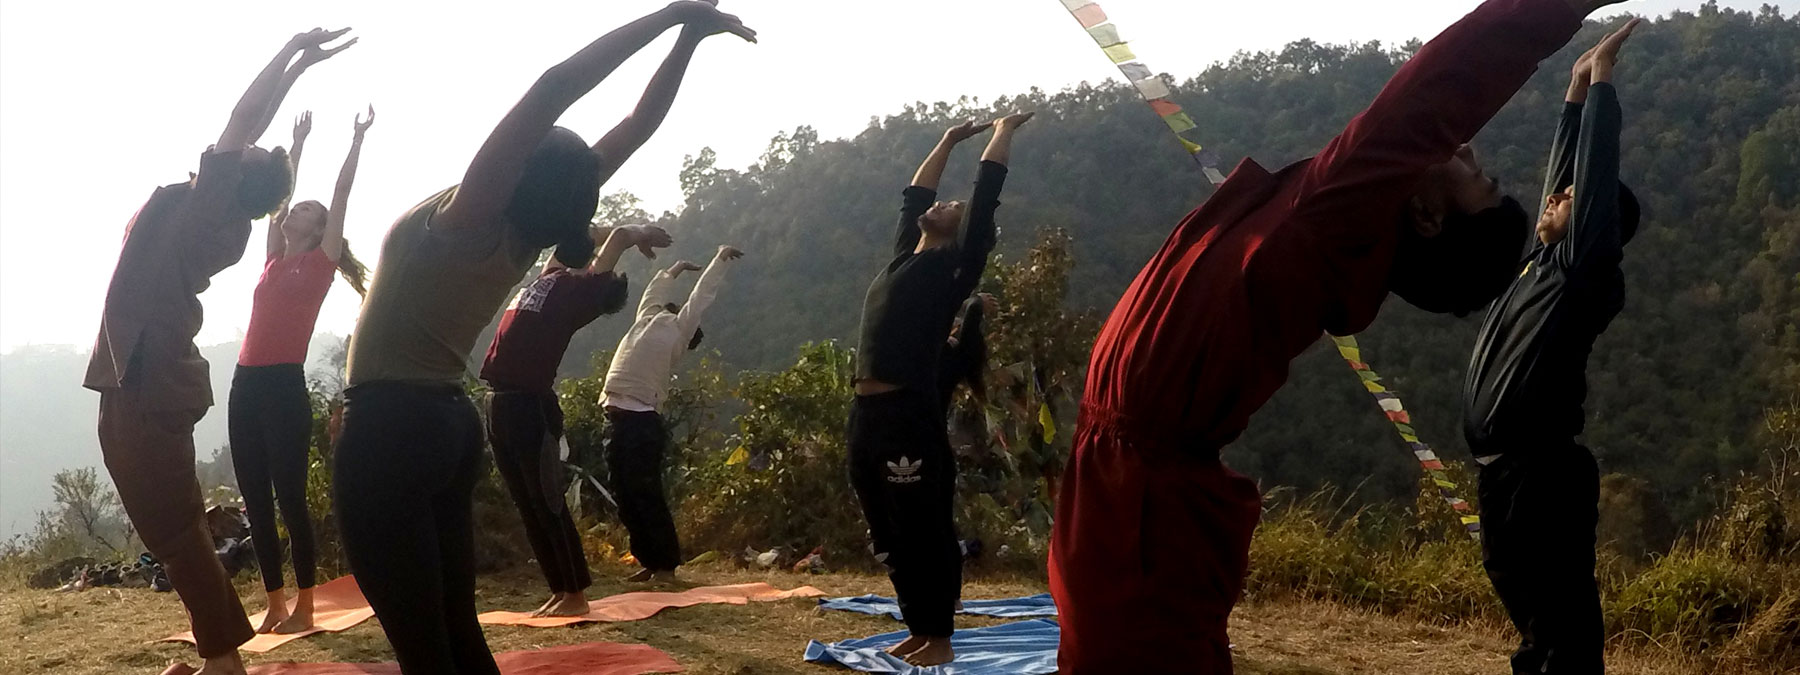 himalayan yoga resort and academy nepal21520323281.jpg